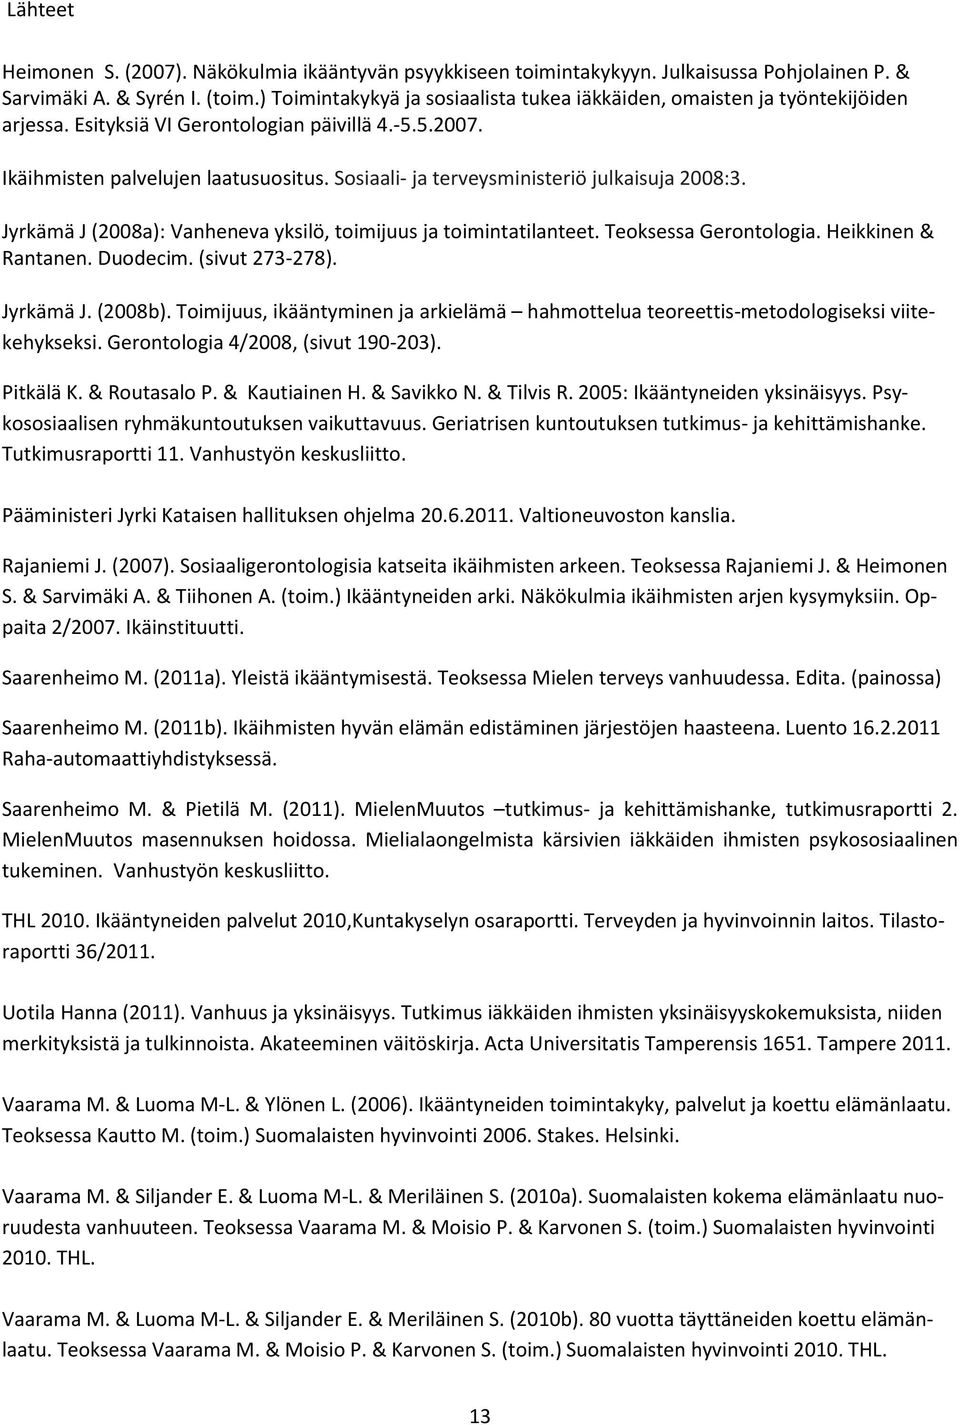 Sosiaali- ja terveysministeriö julkaisuja 2008:3. Jyrkämä J (2008a): Vanheneva yksilö, toimijuus ja toimintatilanteet. Teoksessa Gerontologia. Heikkinen & Rantanen. Duodecim. (sivut 273-278).